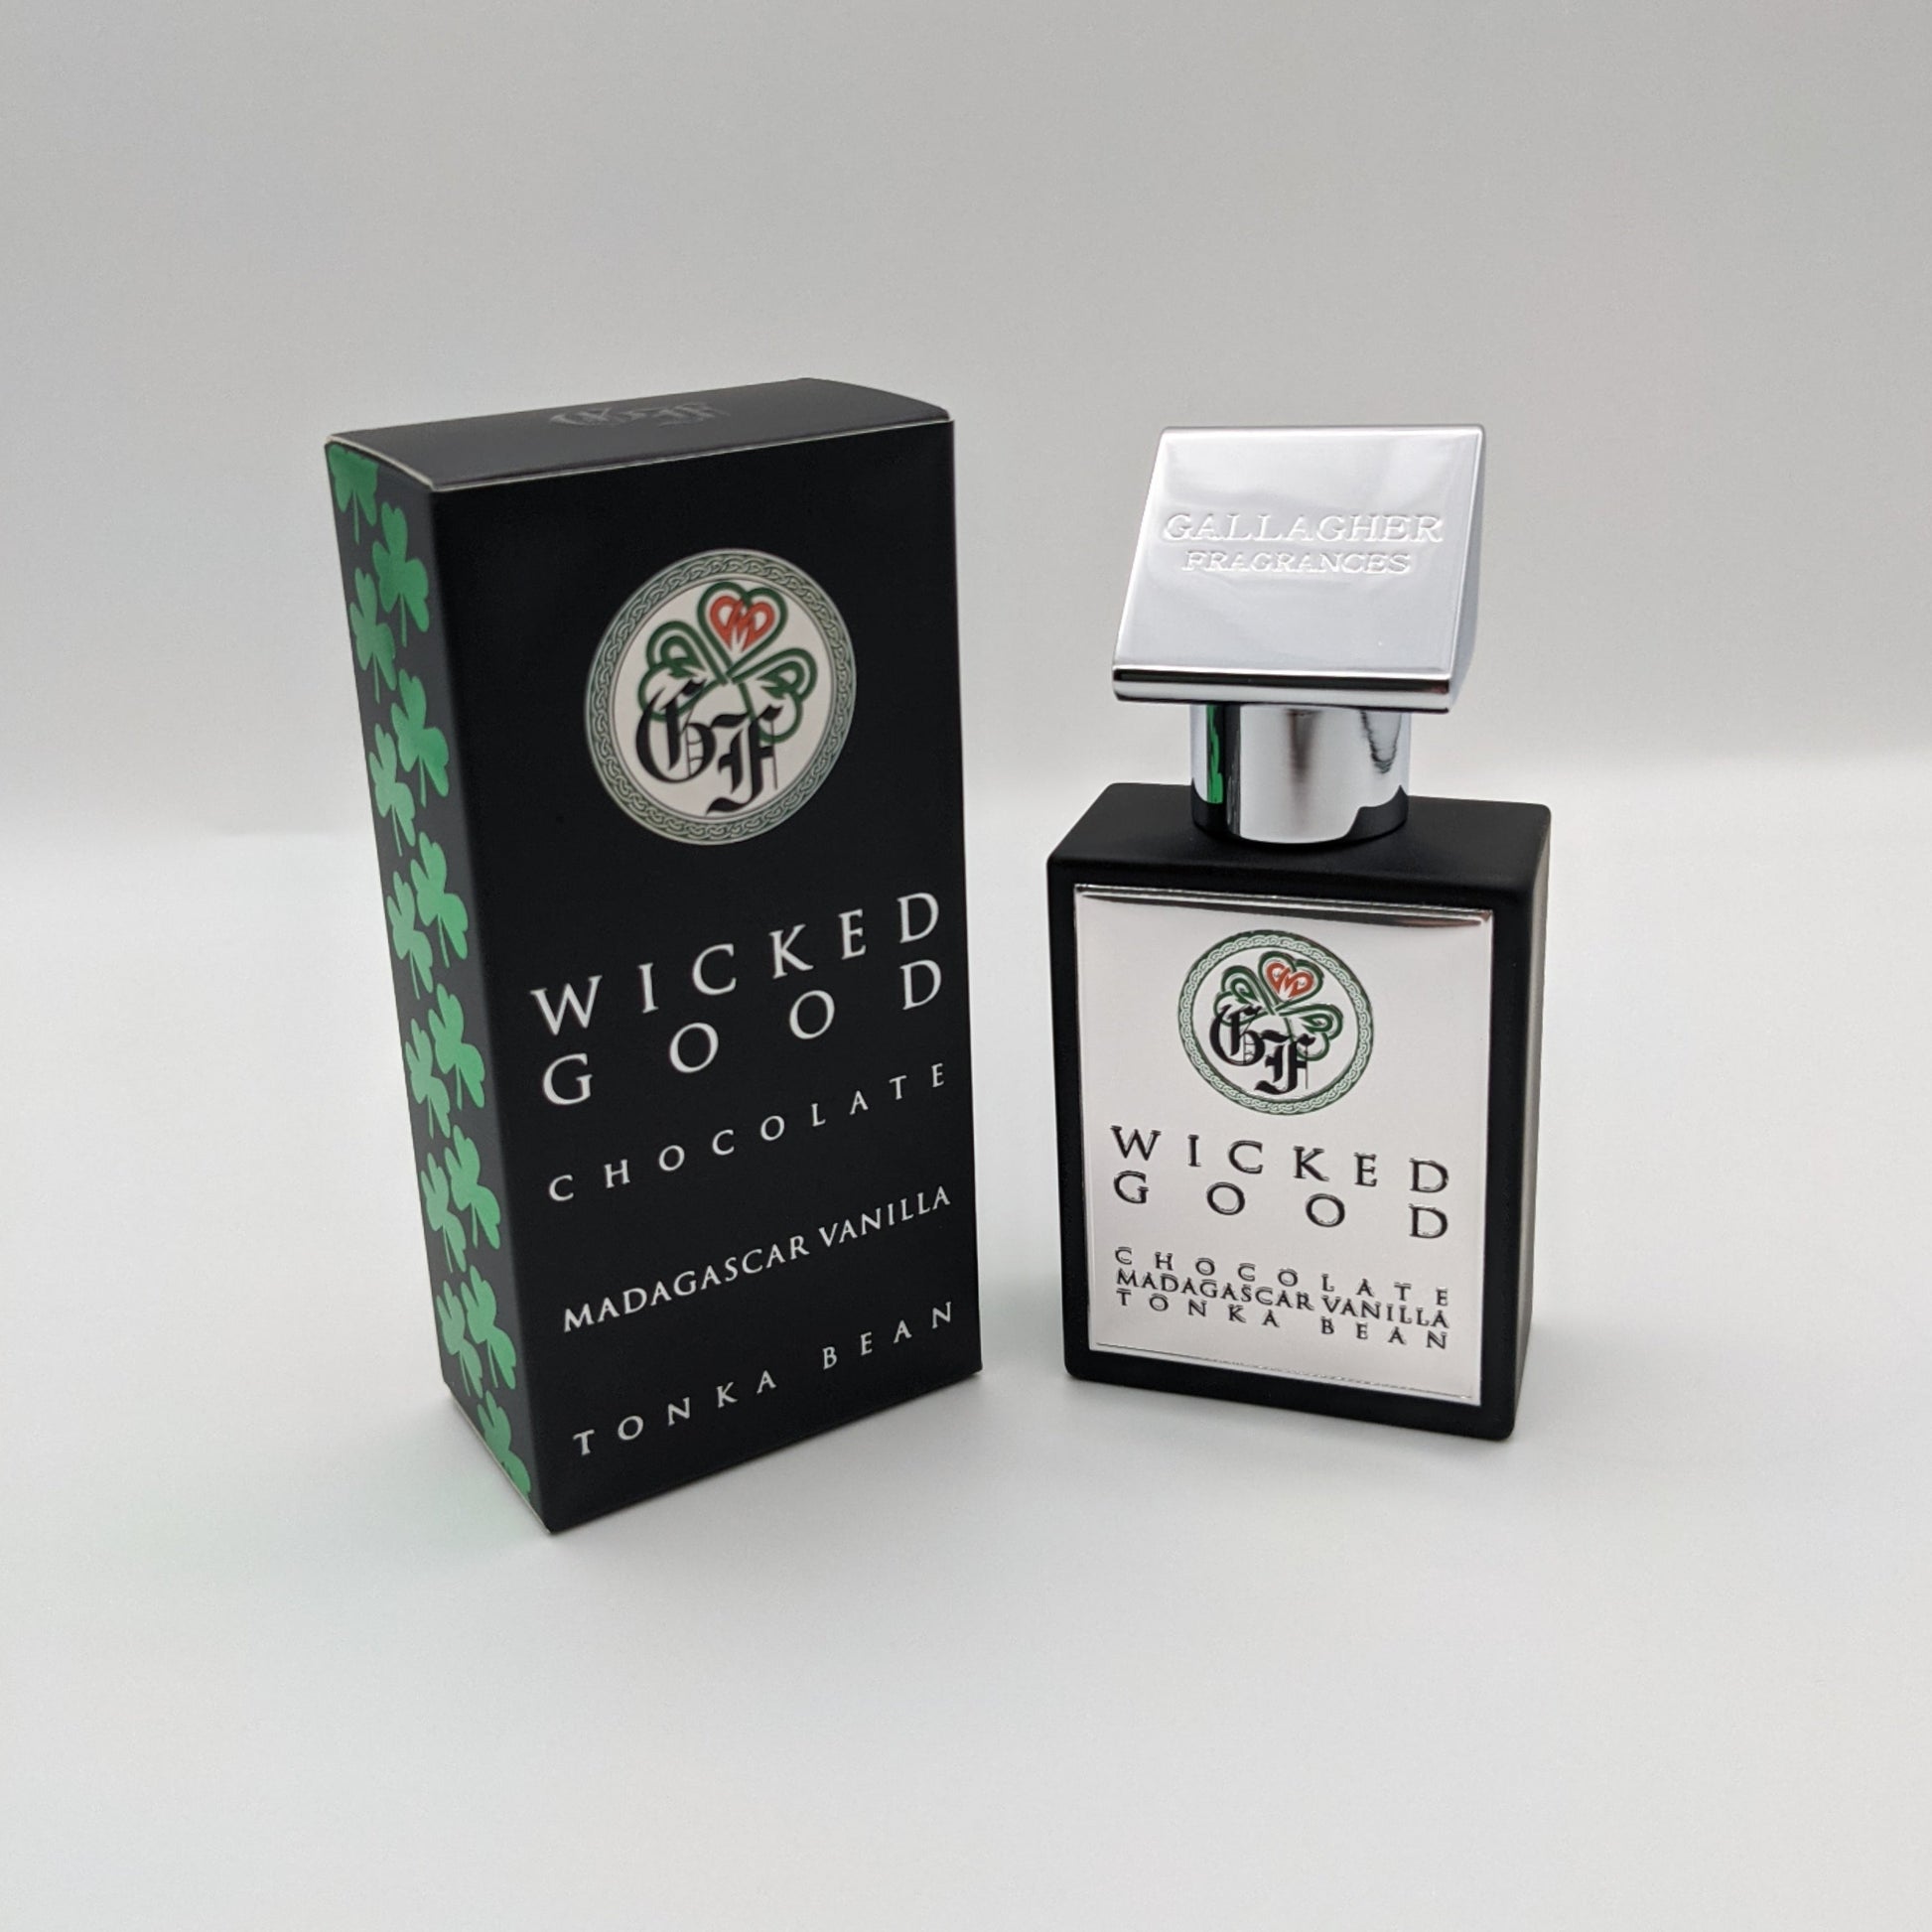 wickedly good scents – Wickedly Good Scents